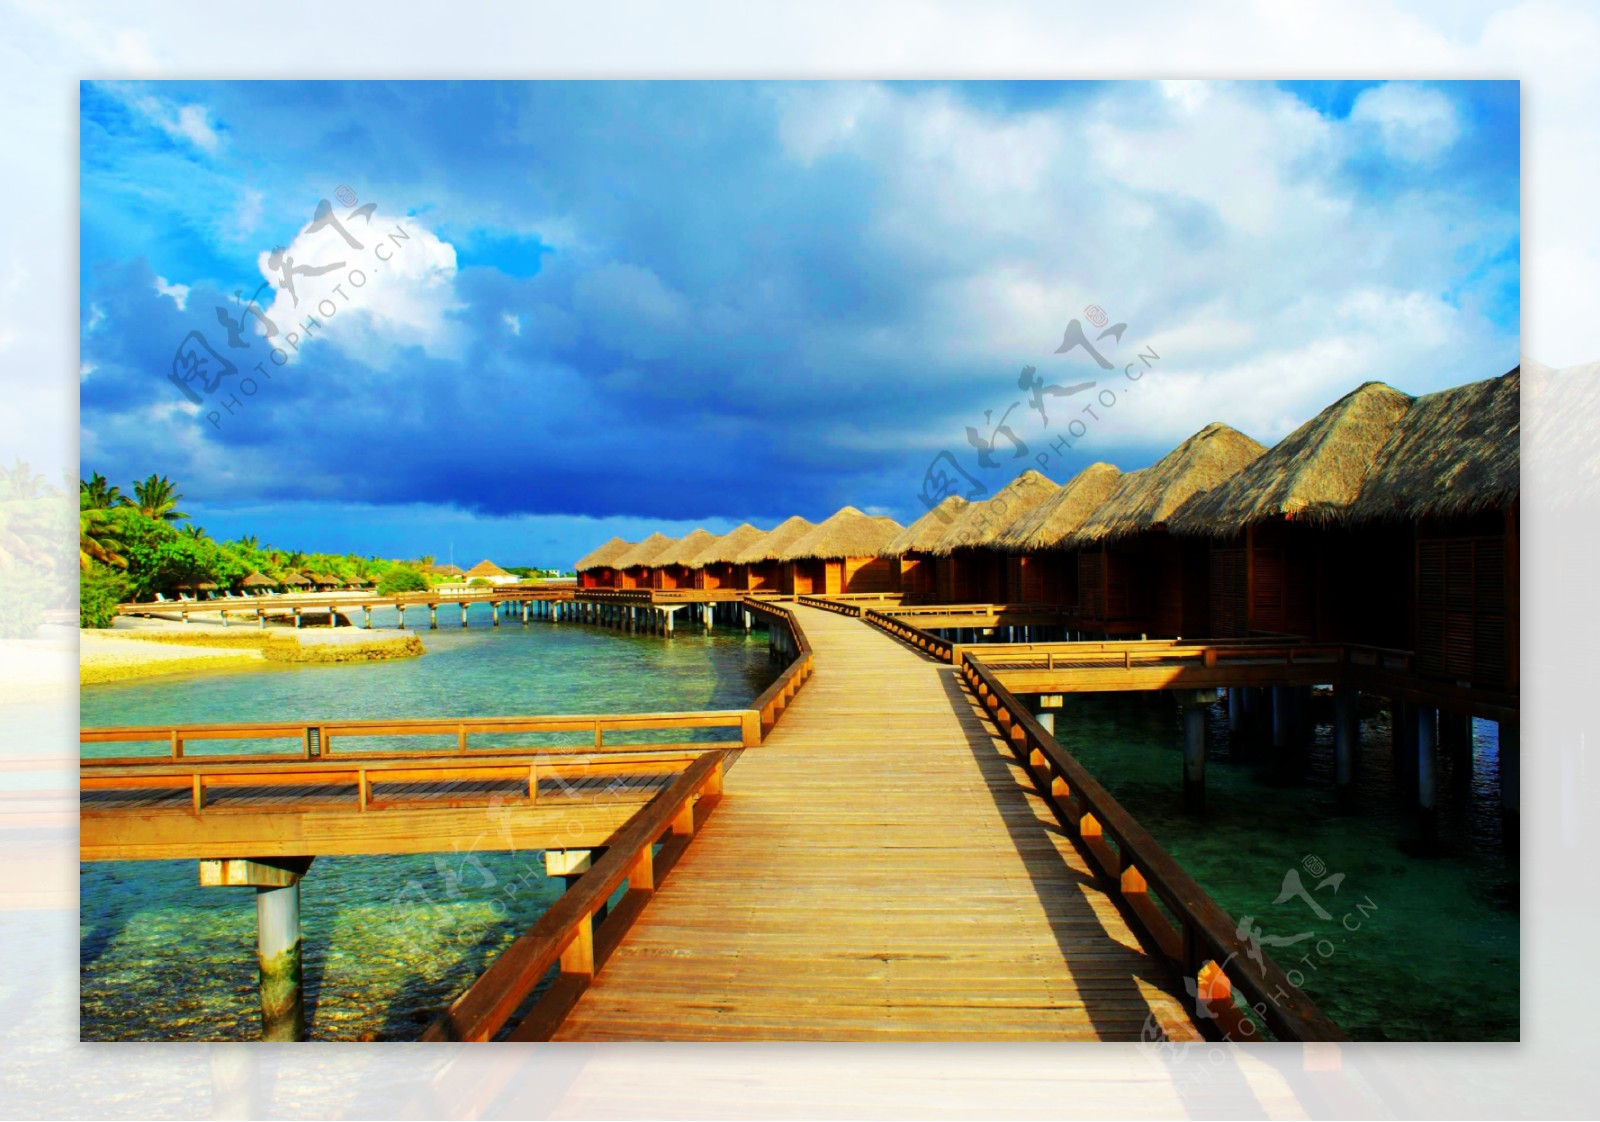 马尔代夫度假屋风景图片素材